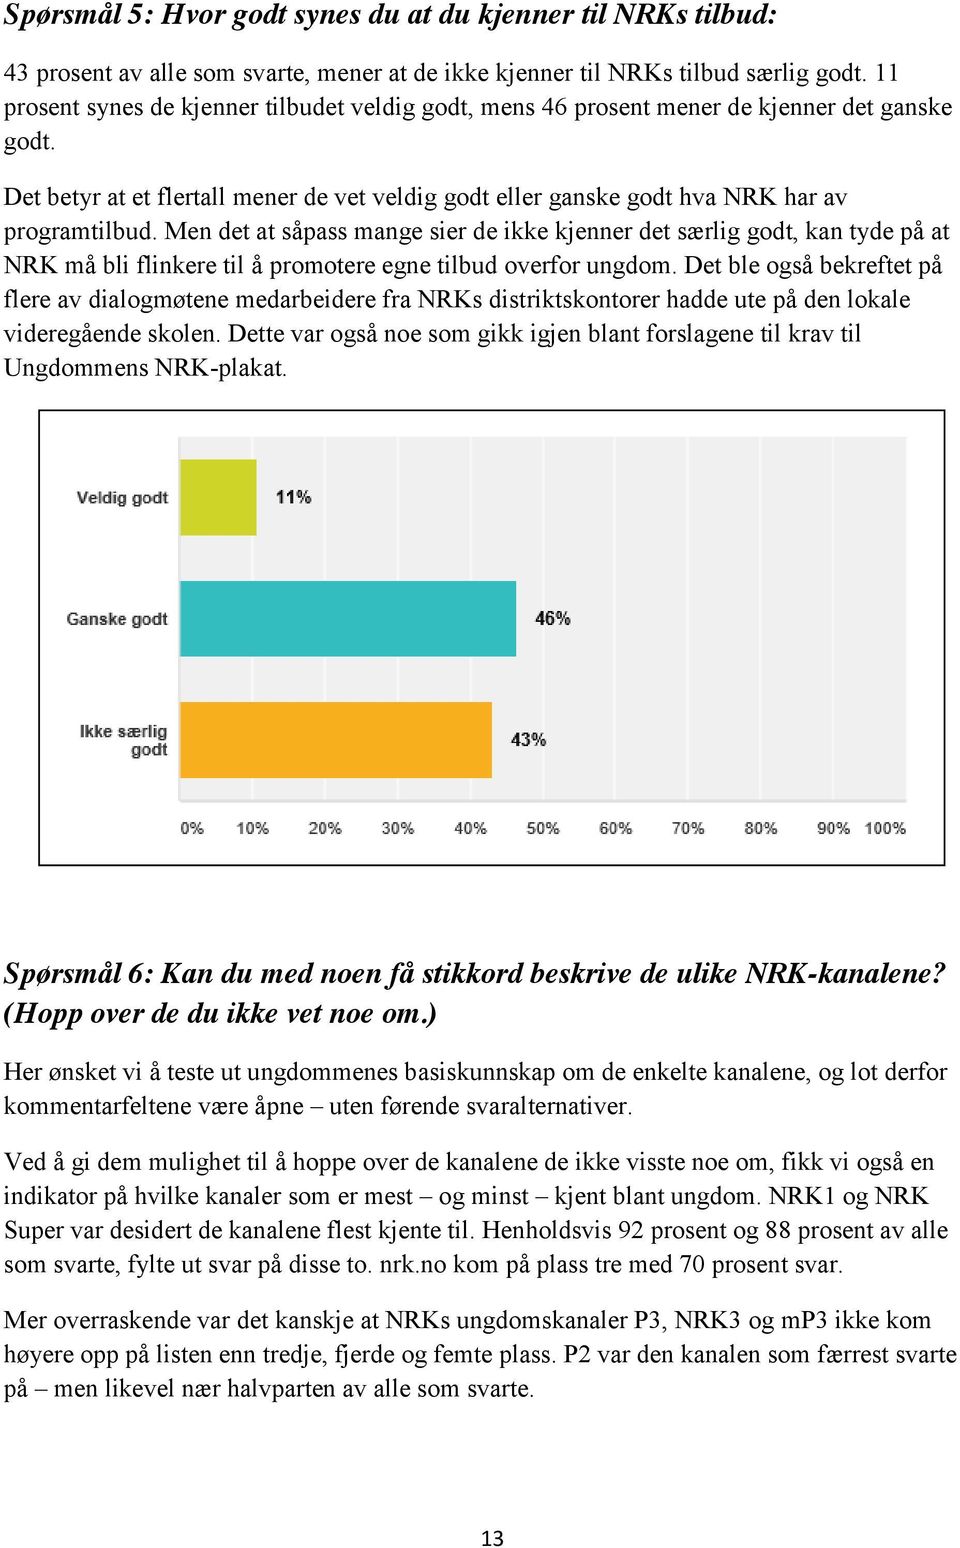 Men det at såpass mange sier de ikke kjenner det særlig godt, kan tyde på at NRK må bli flinkere til å promotere egne tilbud overfor ungdom.